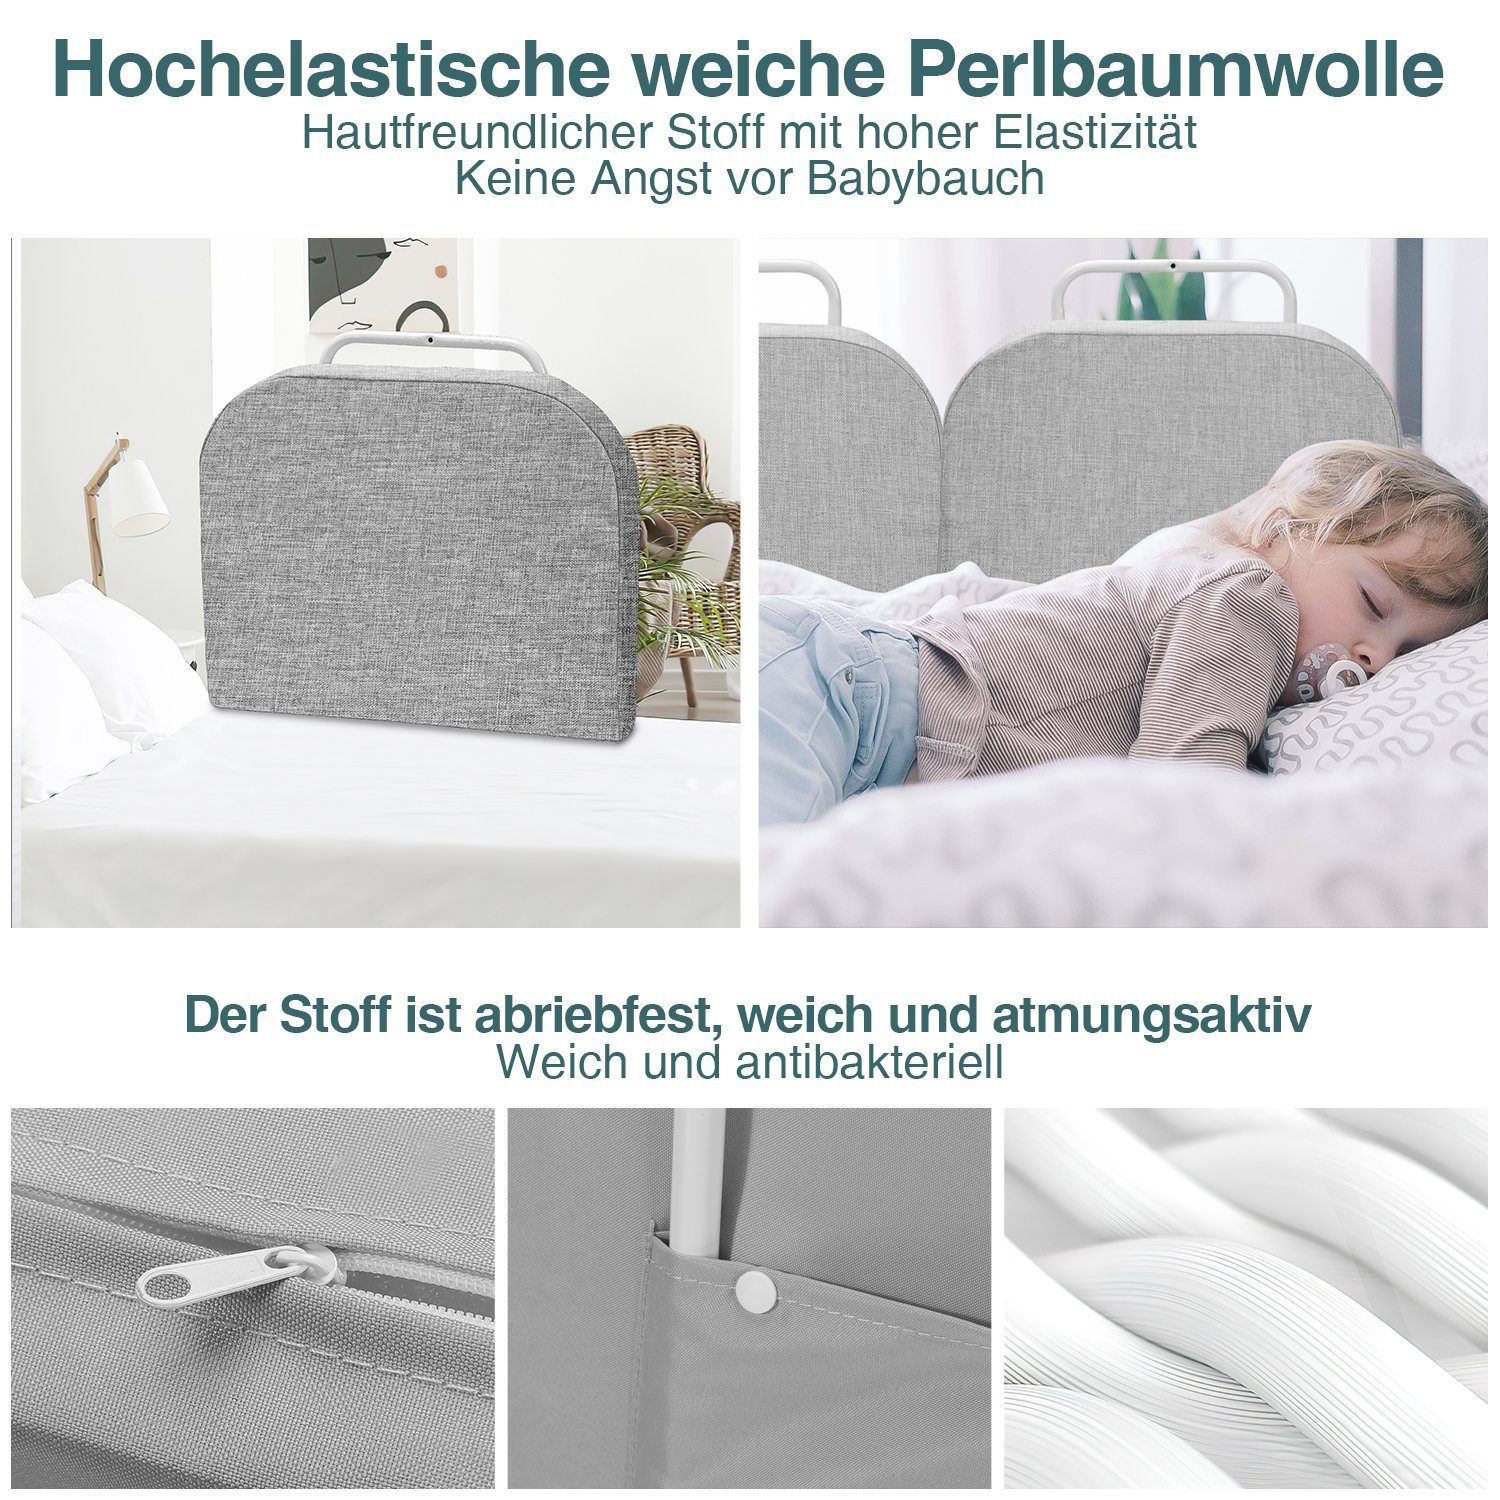 100cm 50cm/60cm L: H:38cm Bettgitter Bettschutzgitter TolleTour Bett für Kinder Grau Kinder Rausfallschutz